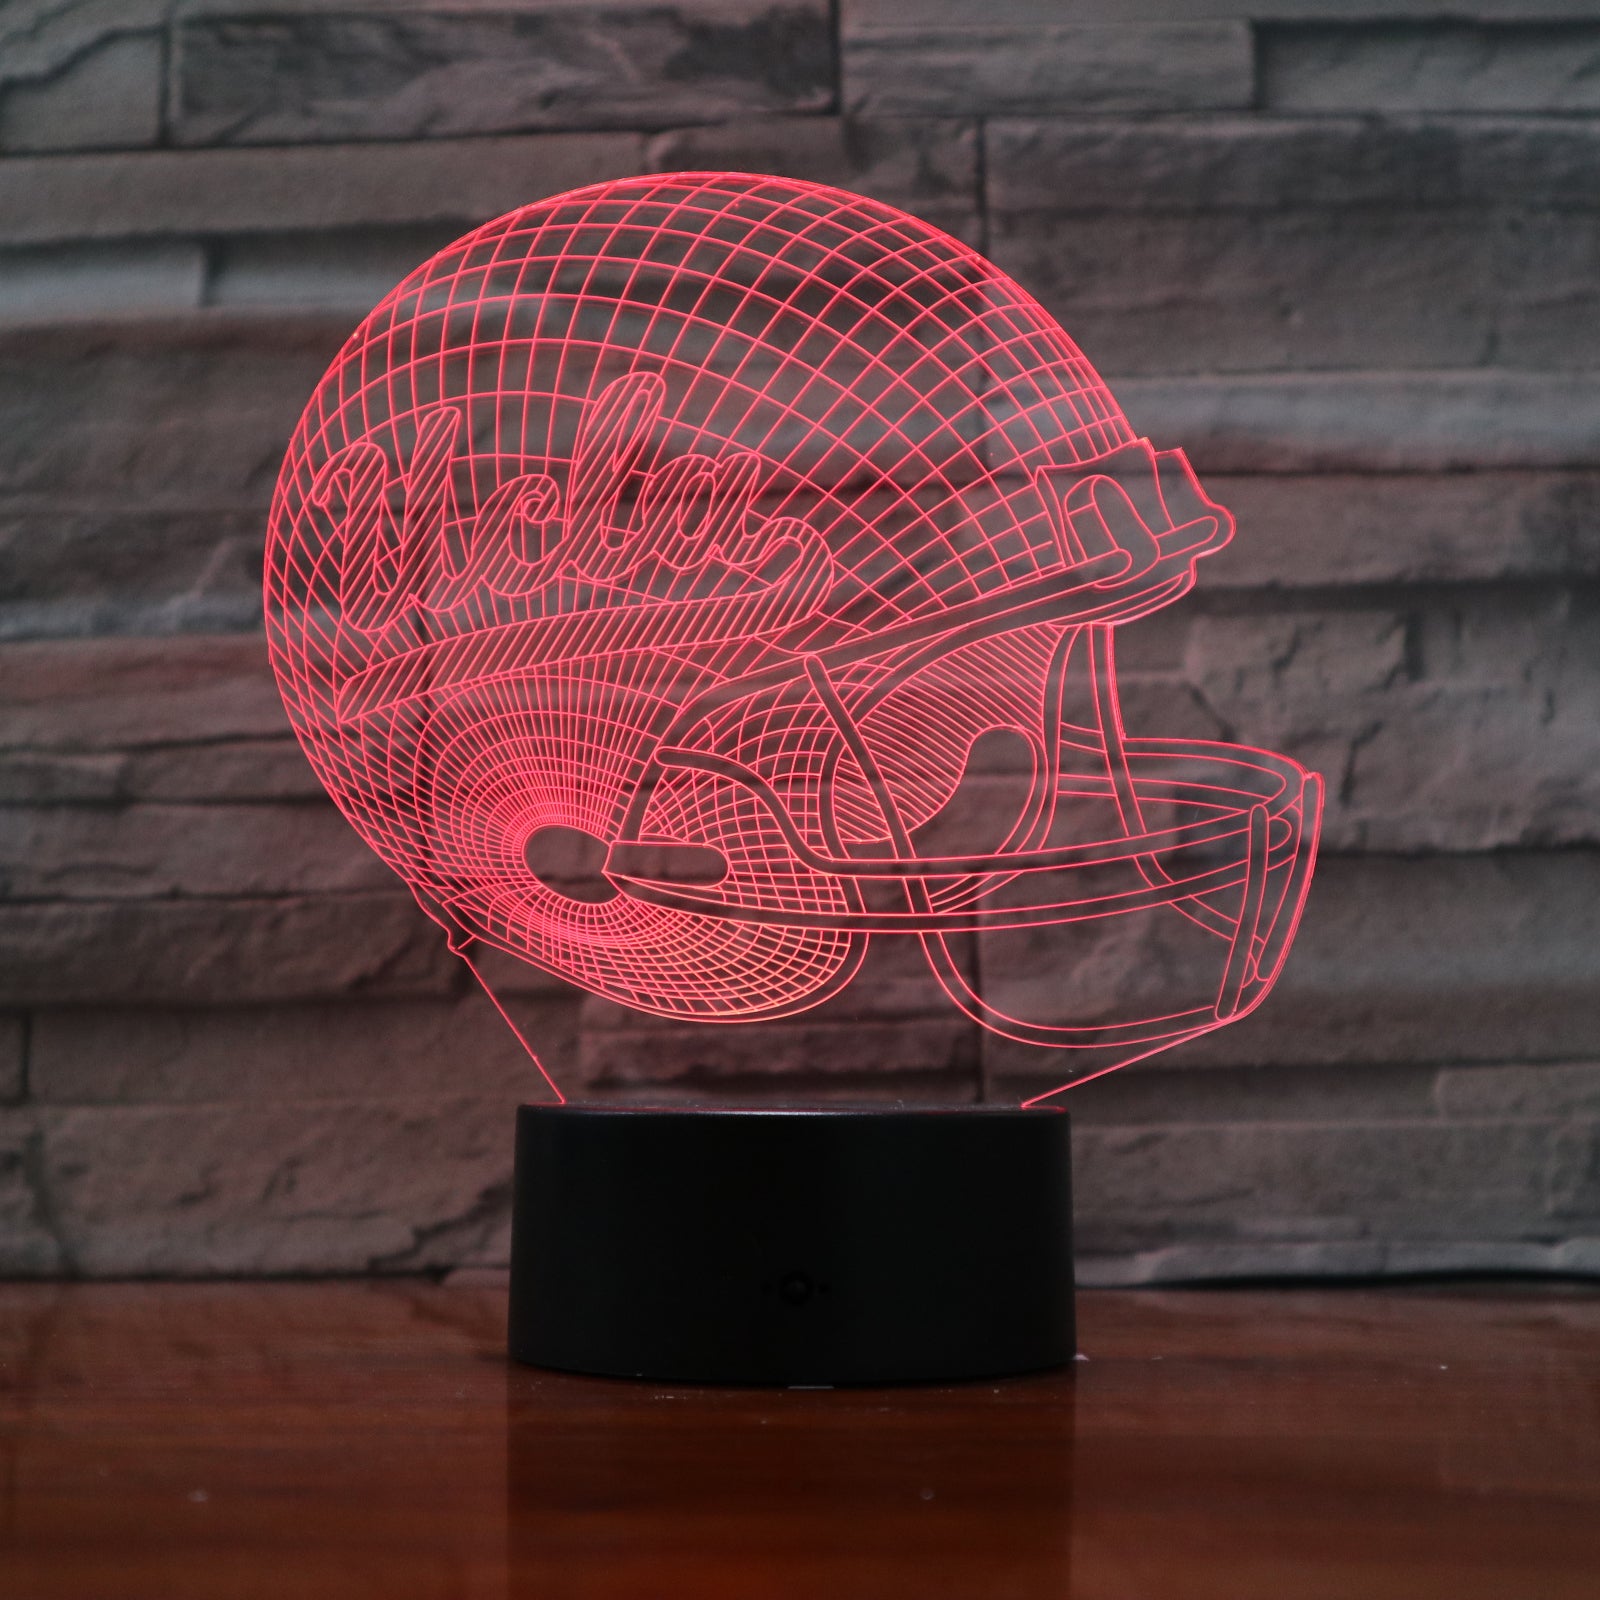 American Football Helmet 3 - 3D Optical Illusion LED Lamp Hologram